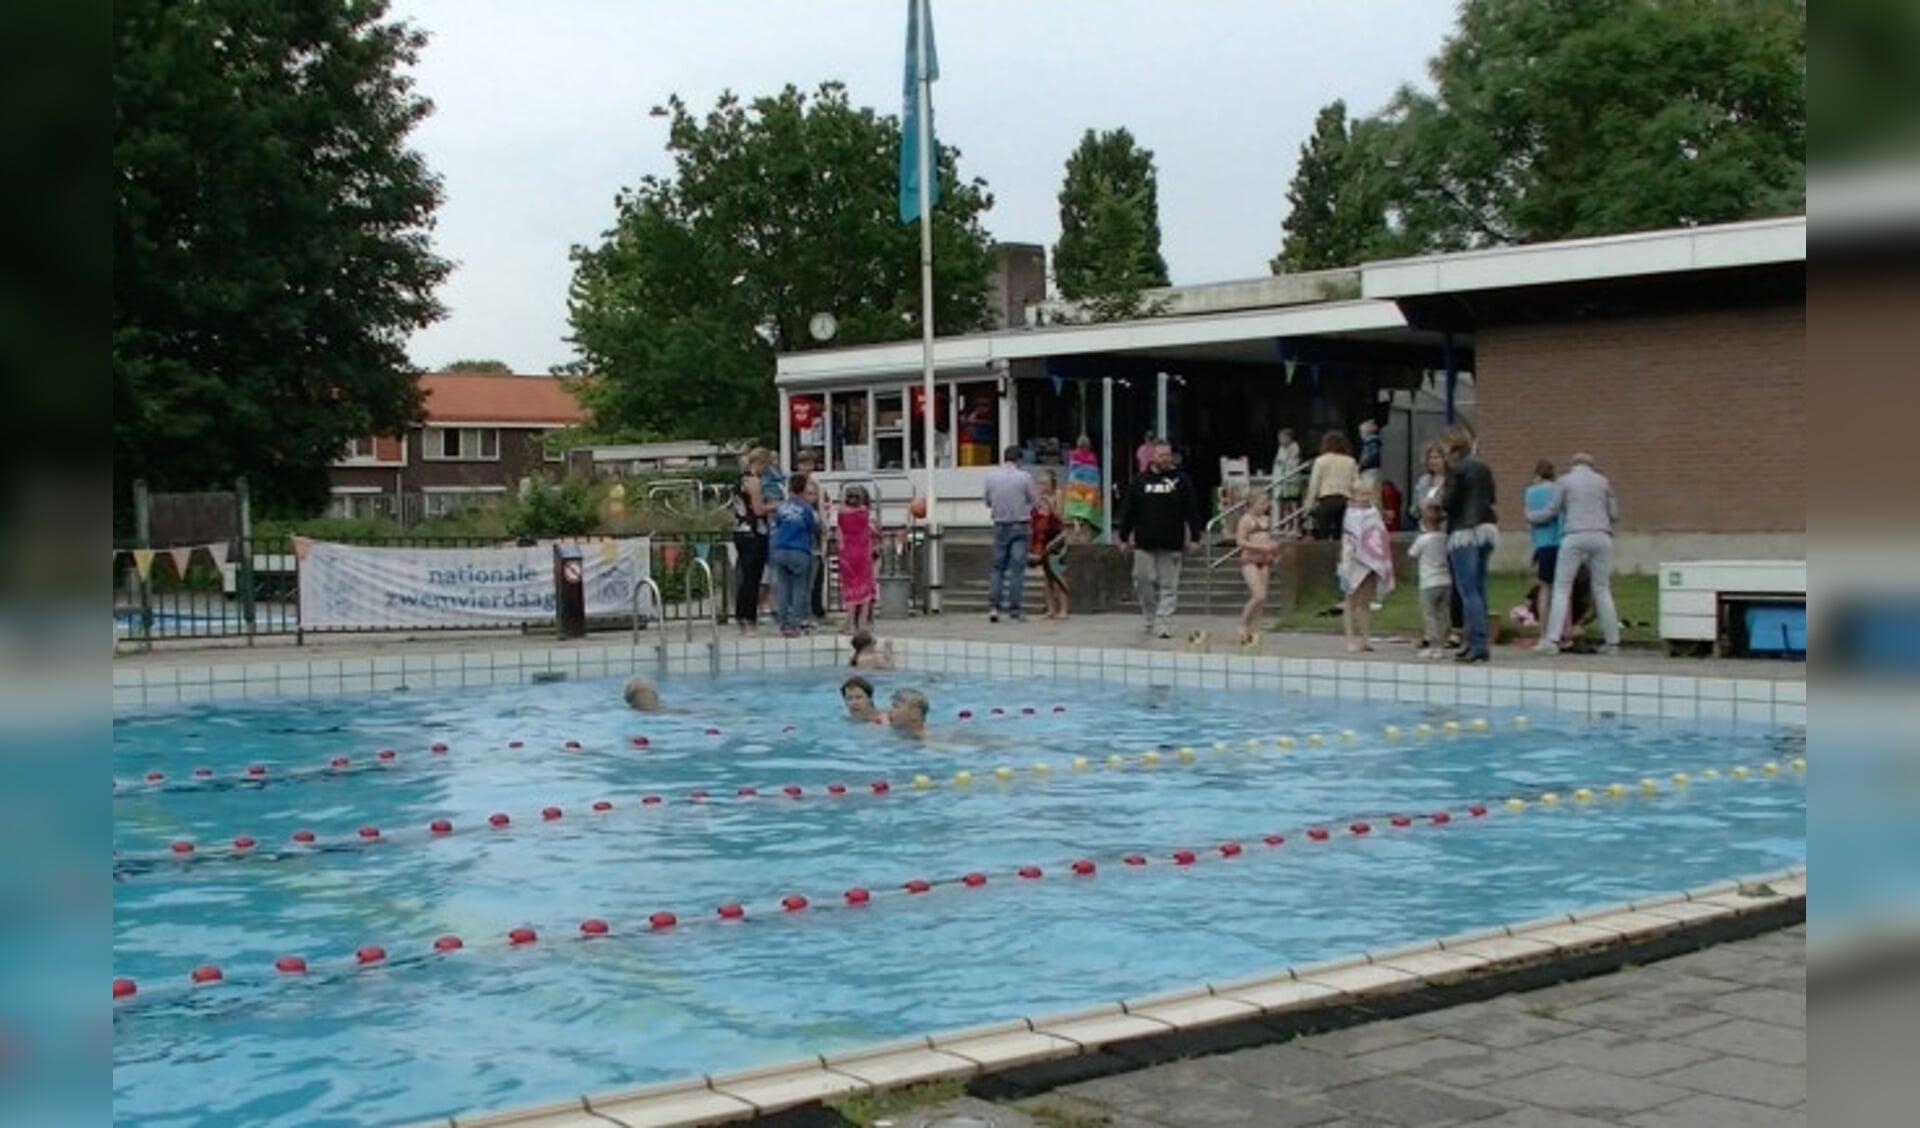  Zwembad De Abelen in Swifterbant.